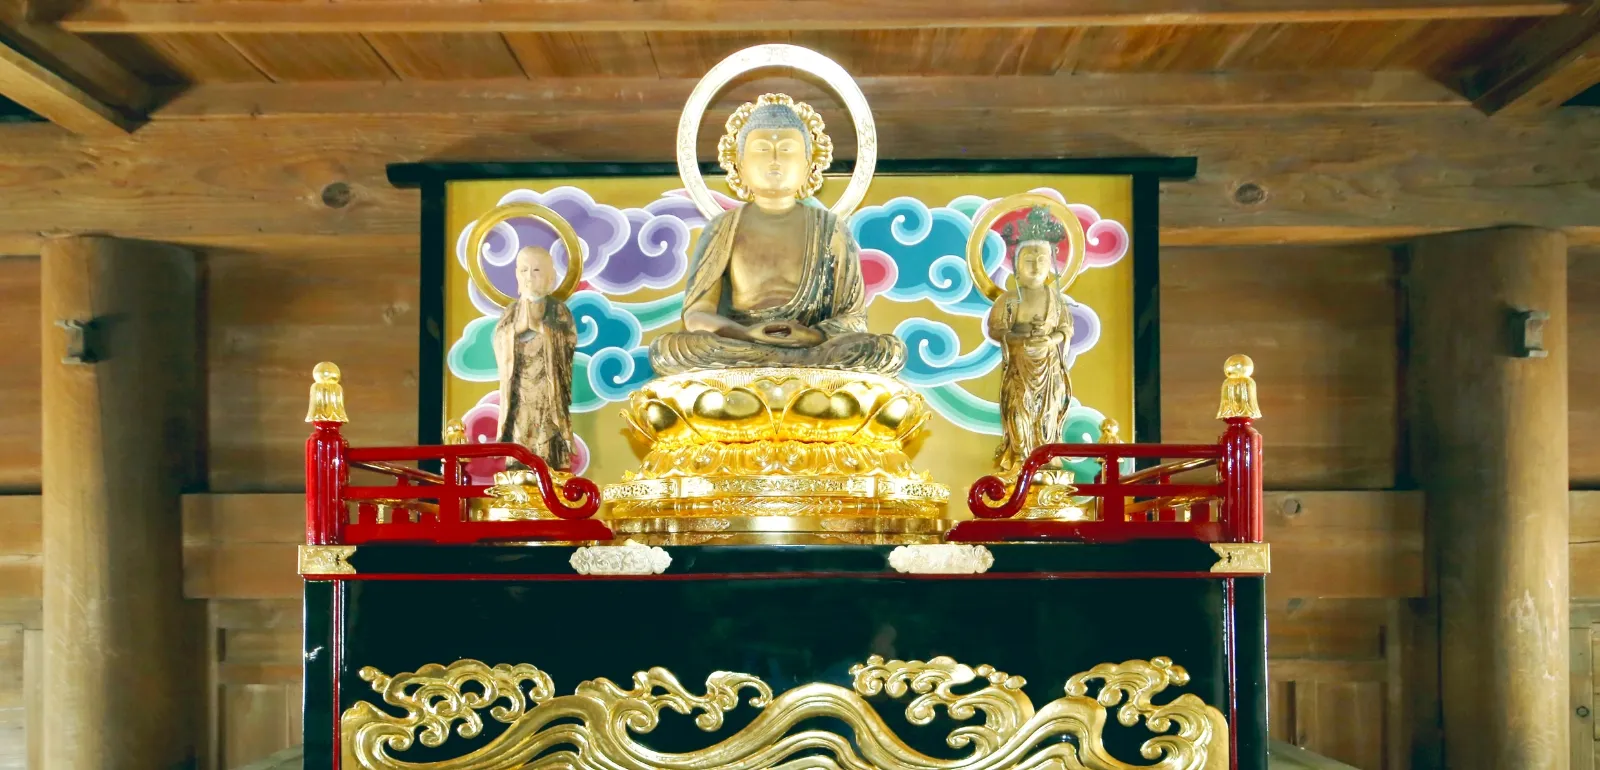 岡崎市の本光寺の山門内部に安置されている釈迦三尊像